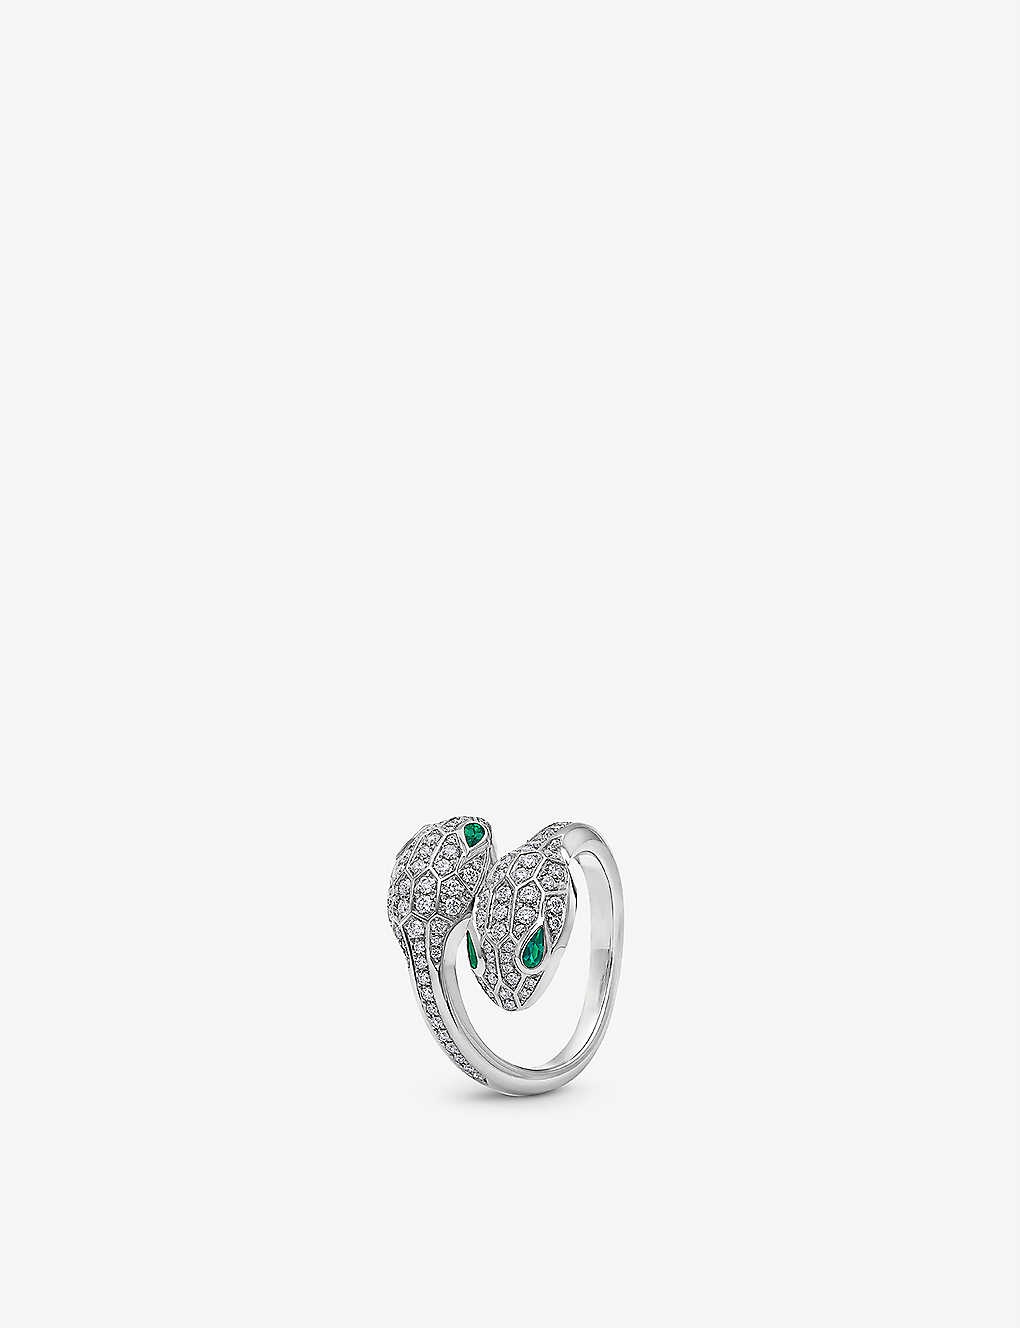 Serpenti Seduttori 18ct white-gold, 0.56ct brilliant-cut diamond and 0.2ct emerald ring - 1